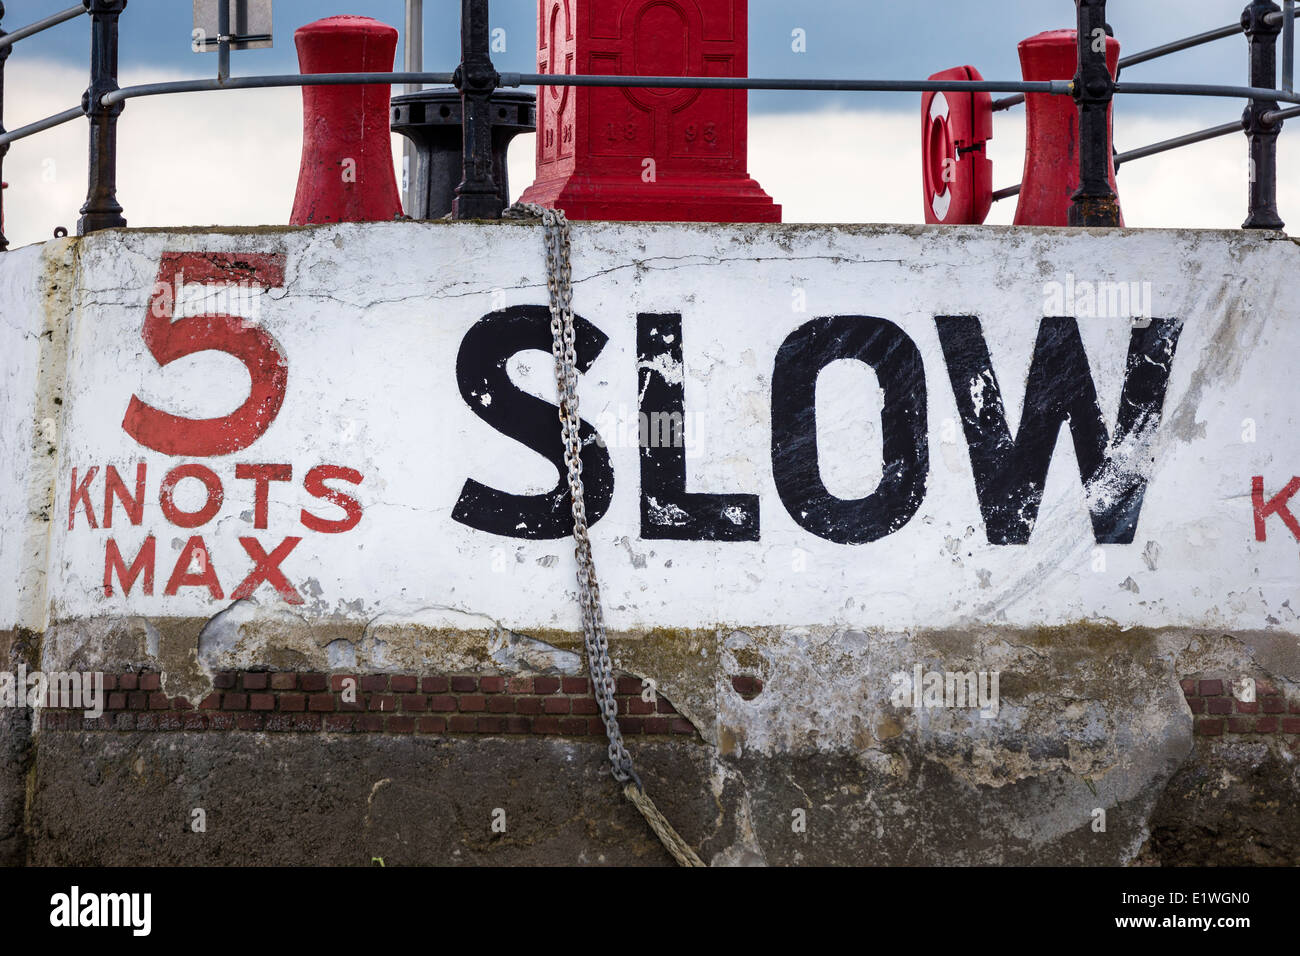 5 noeuds Max - lent. L'avertissement à l'entrée du port de Torquay, Devon - Angleterre. Banque D'Images